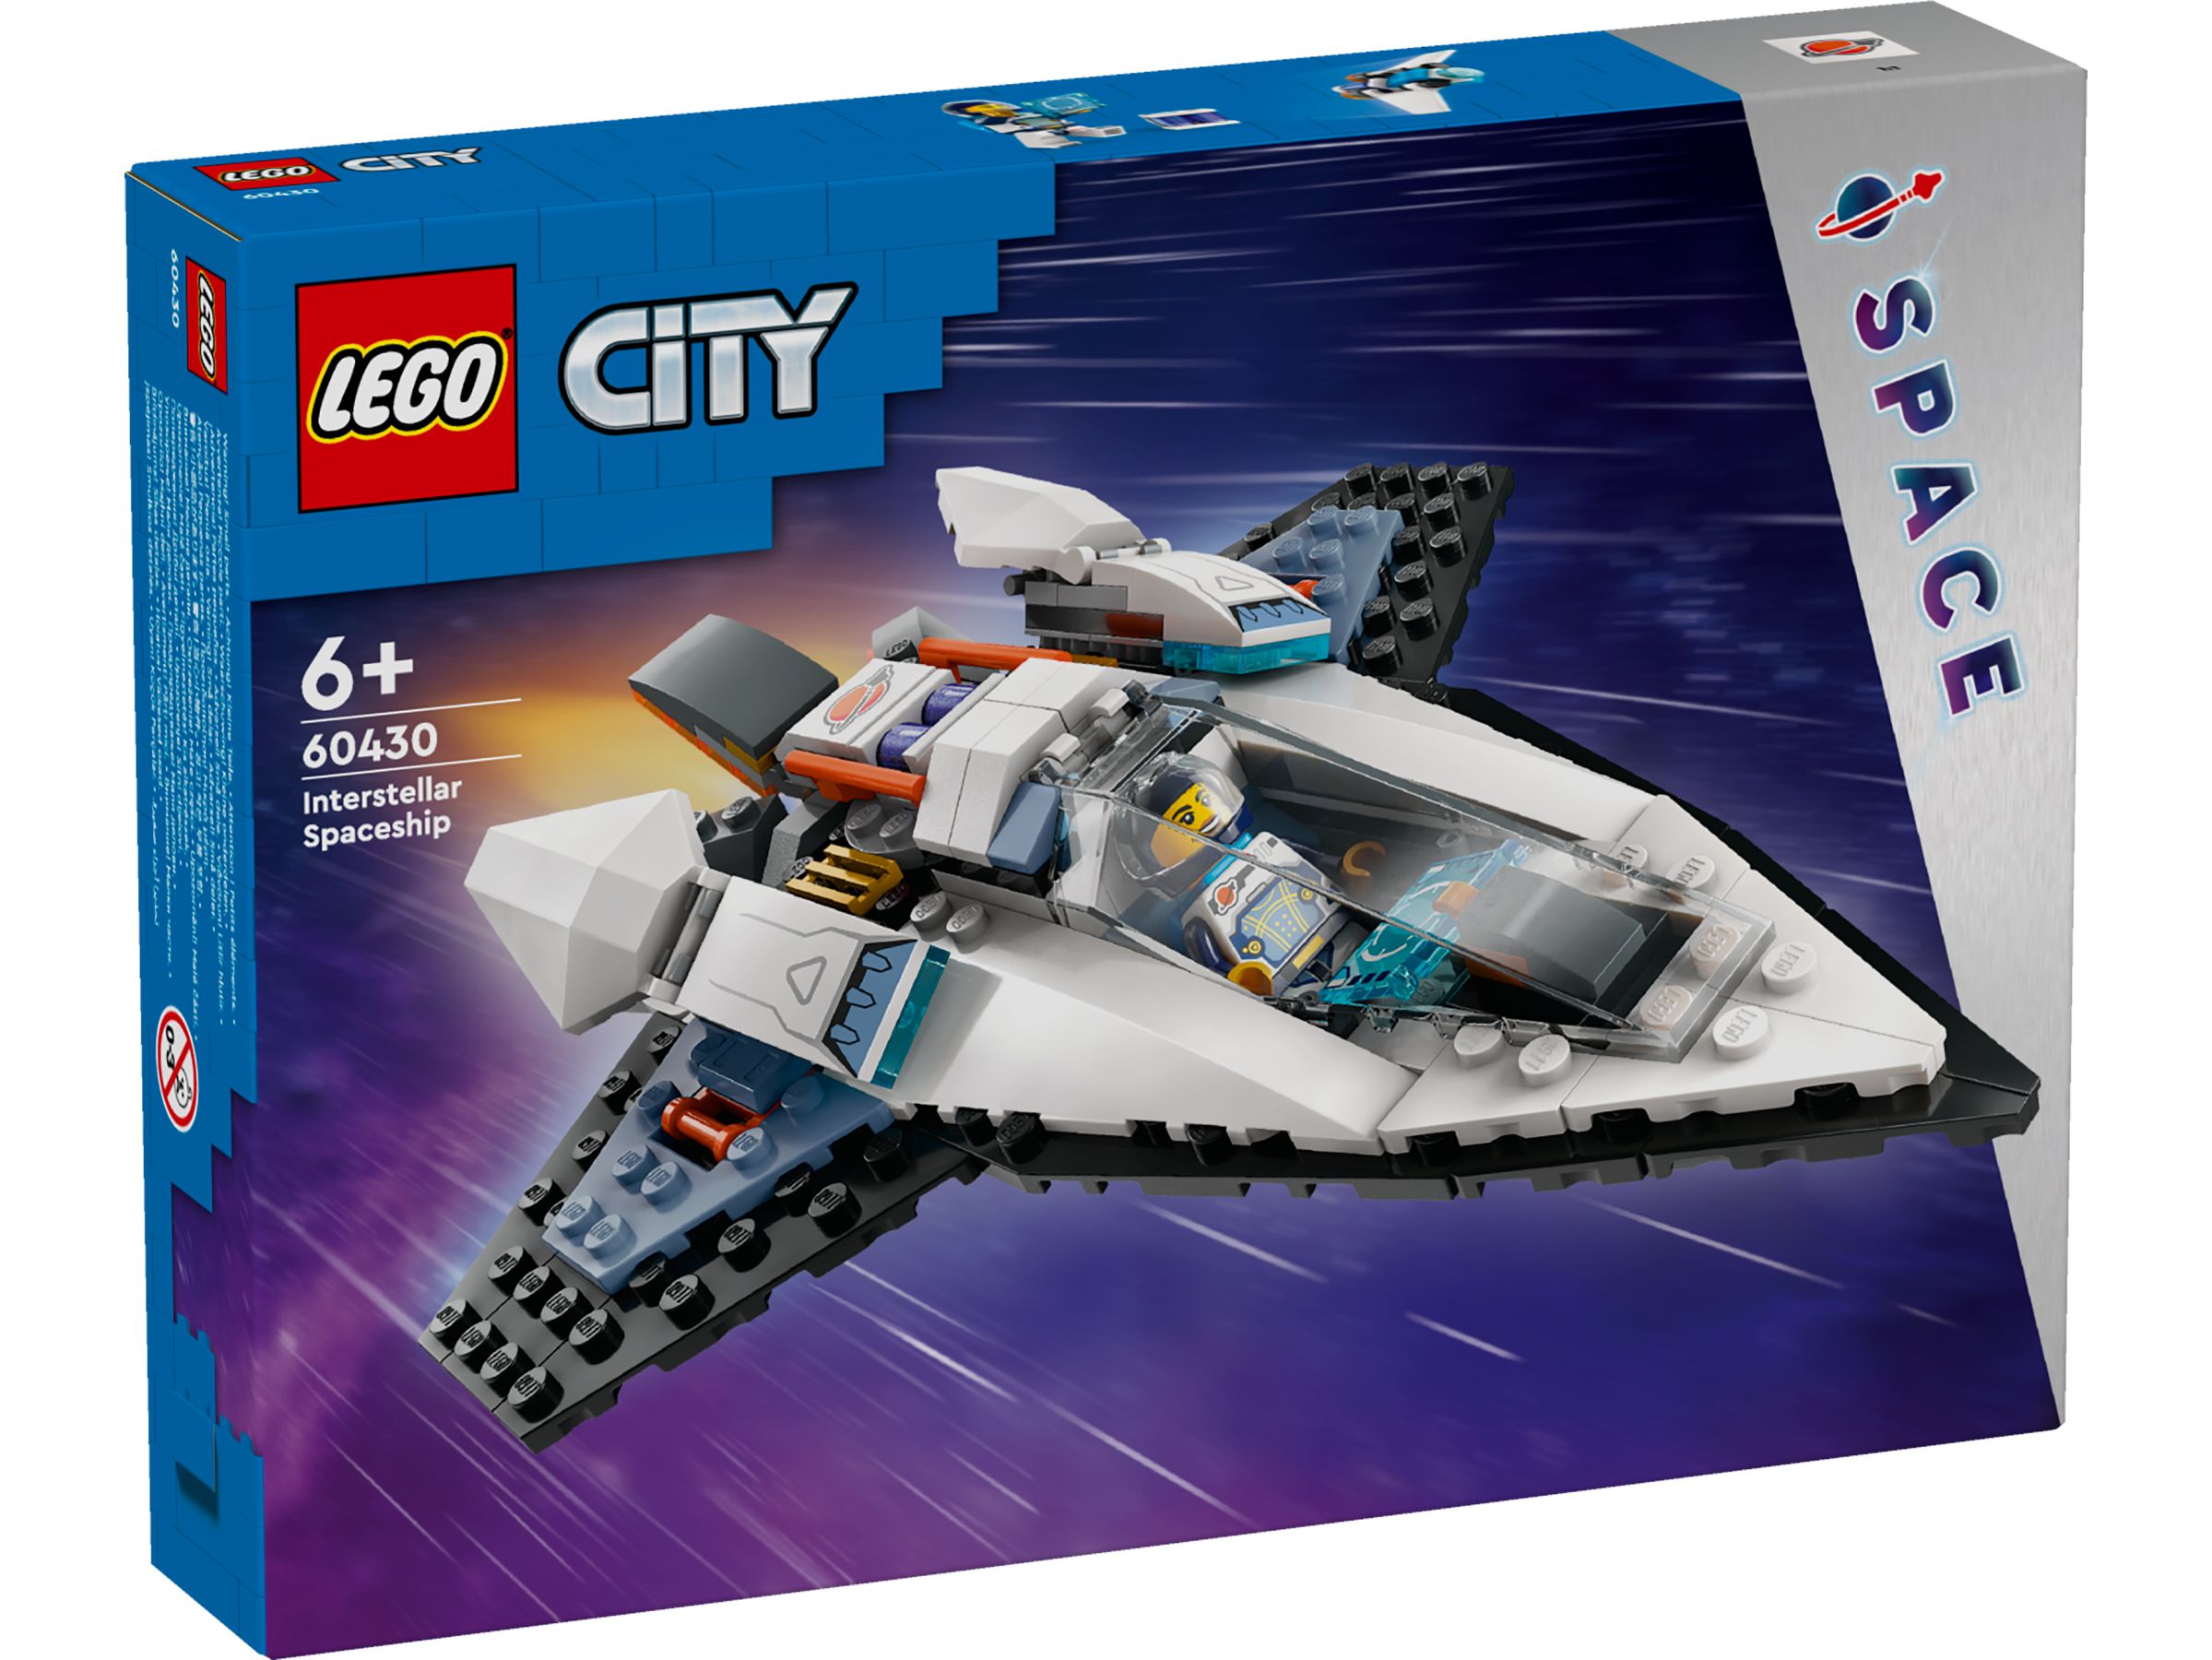 LEGO City 60430 Raumschiff LEGO_60430_box1_v29.jpg